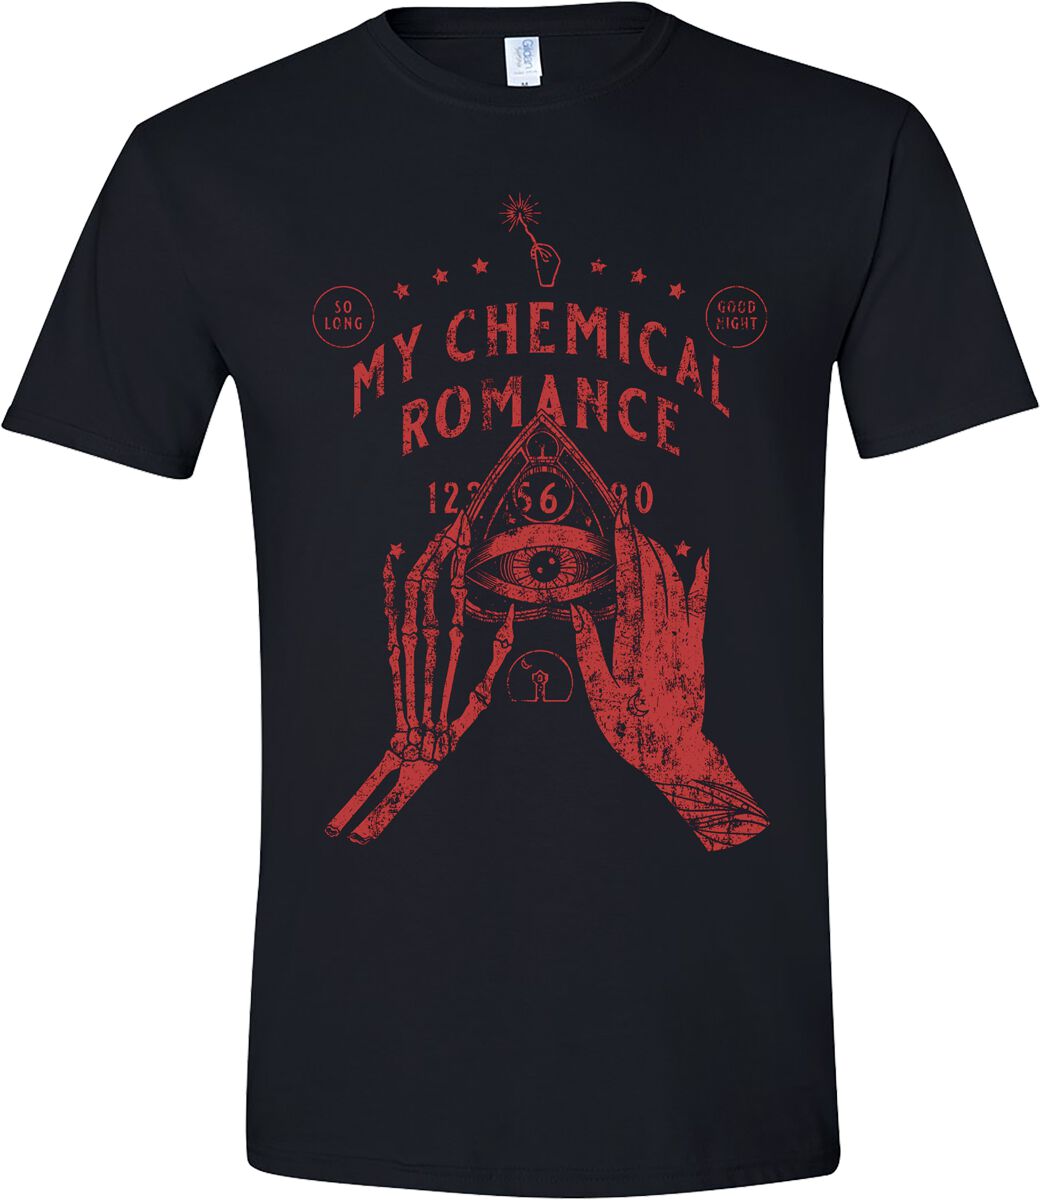 My Chemical Romance T-Shirt - Skeleton Planchette (Red Print) - S bis M - für Männer - Größe M - schwarz  - Lizenziertes Merchandise!